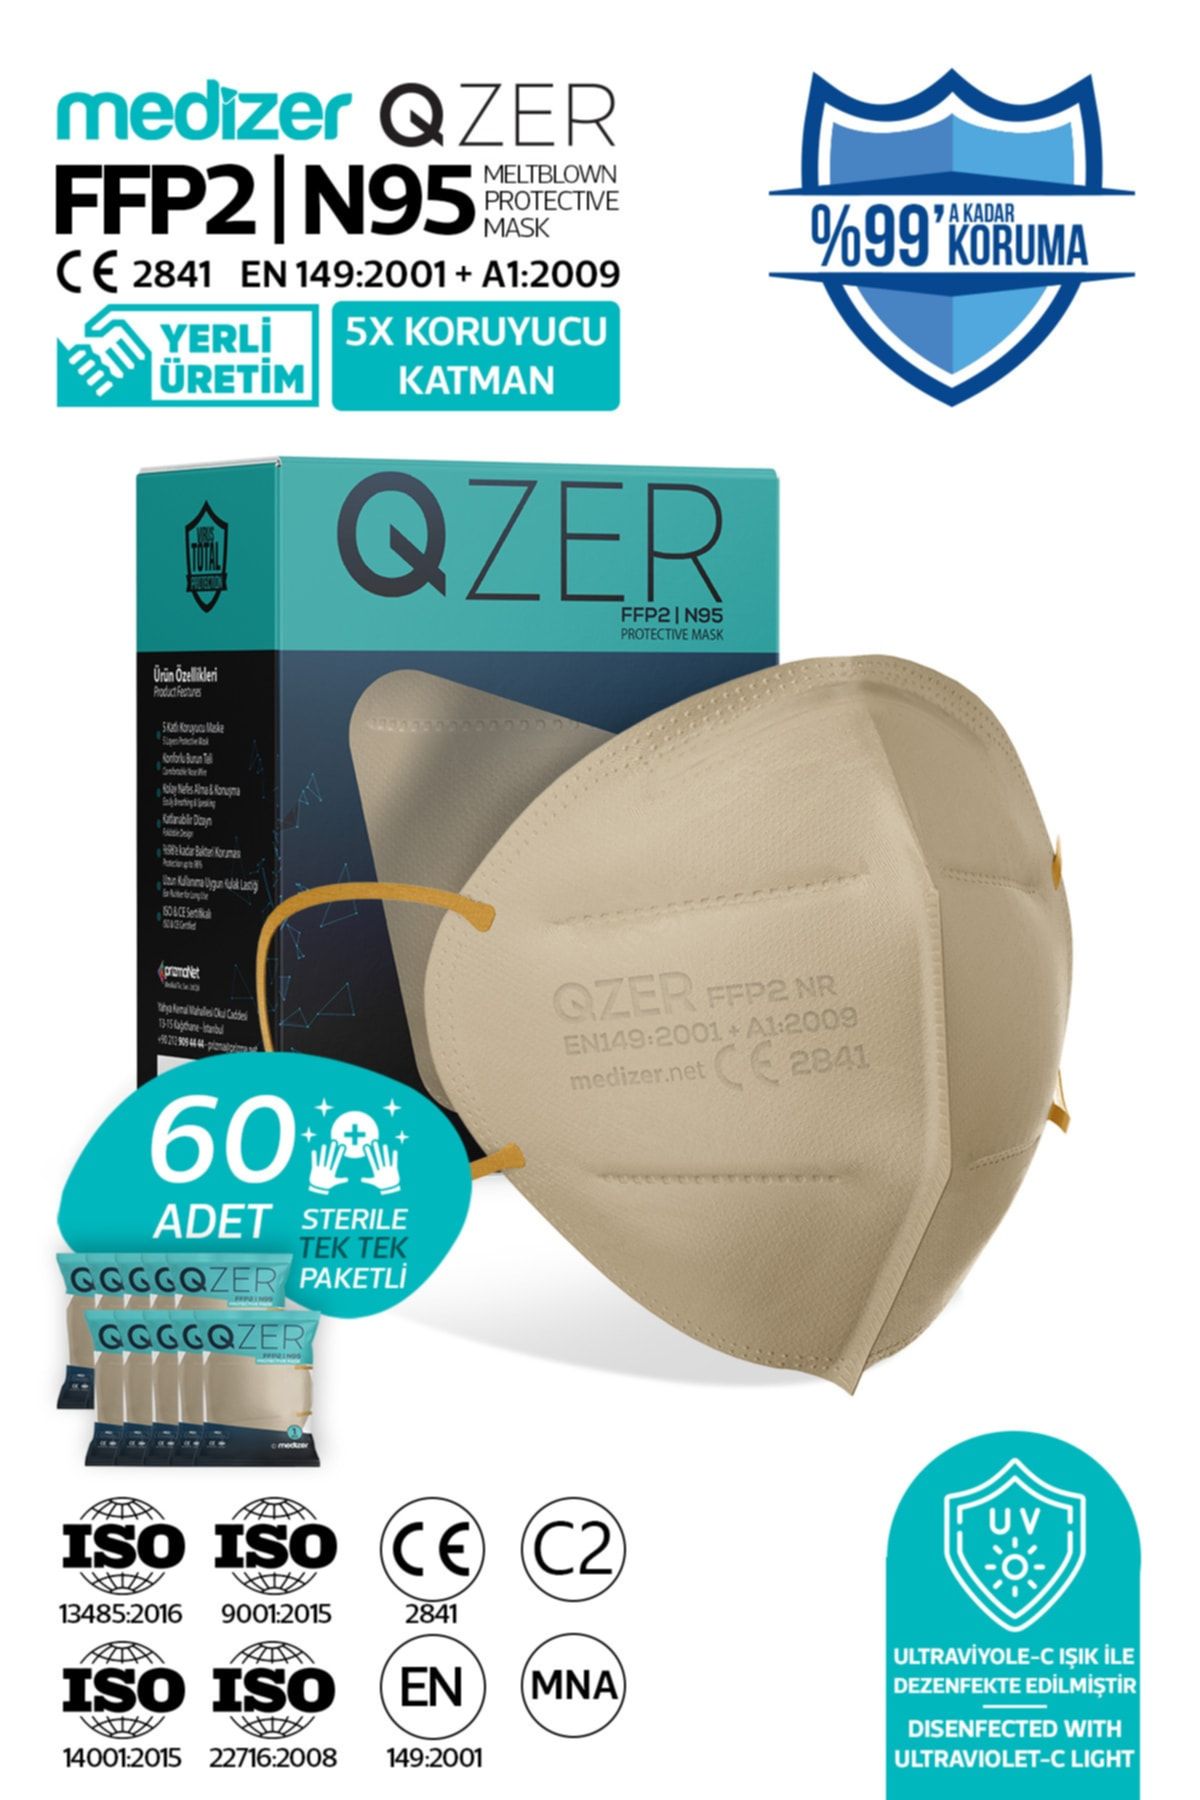 Medizer Qzer 60 Adet Krem Renk 5 Katmanlı N95 Maske